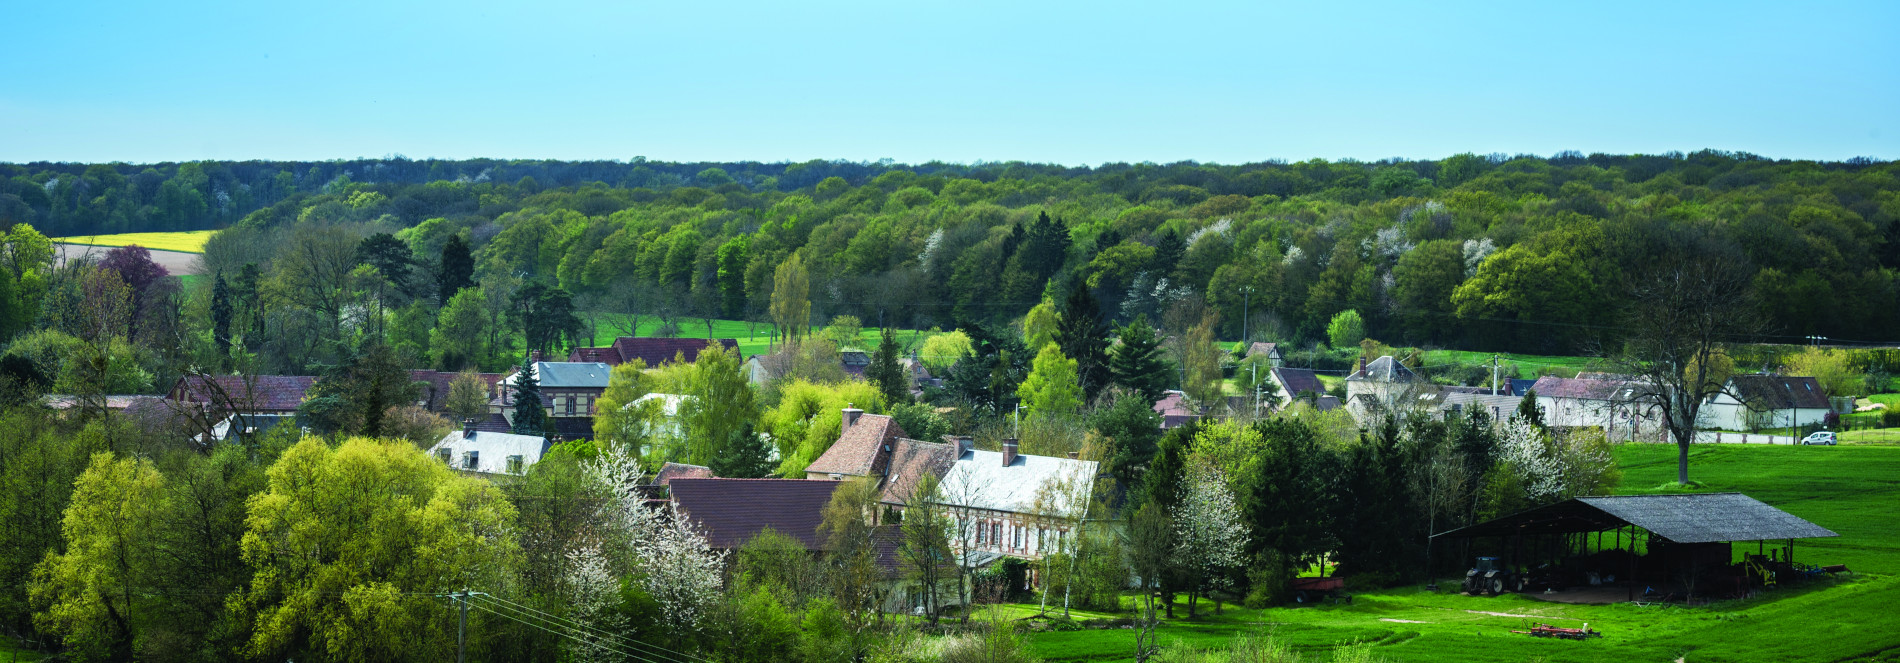 Boutencourt Village